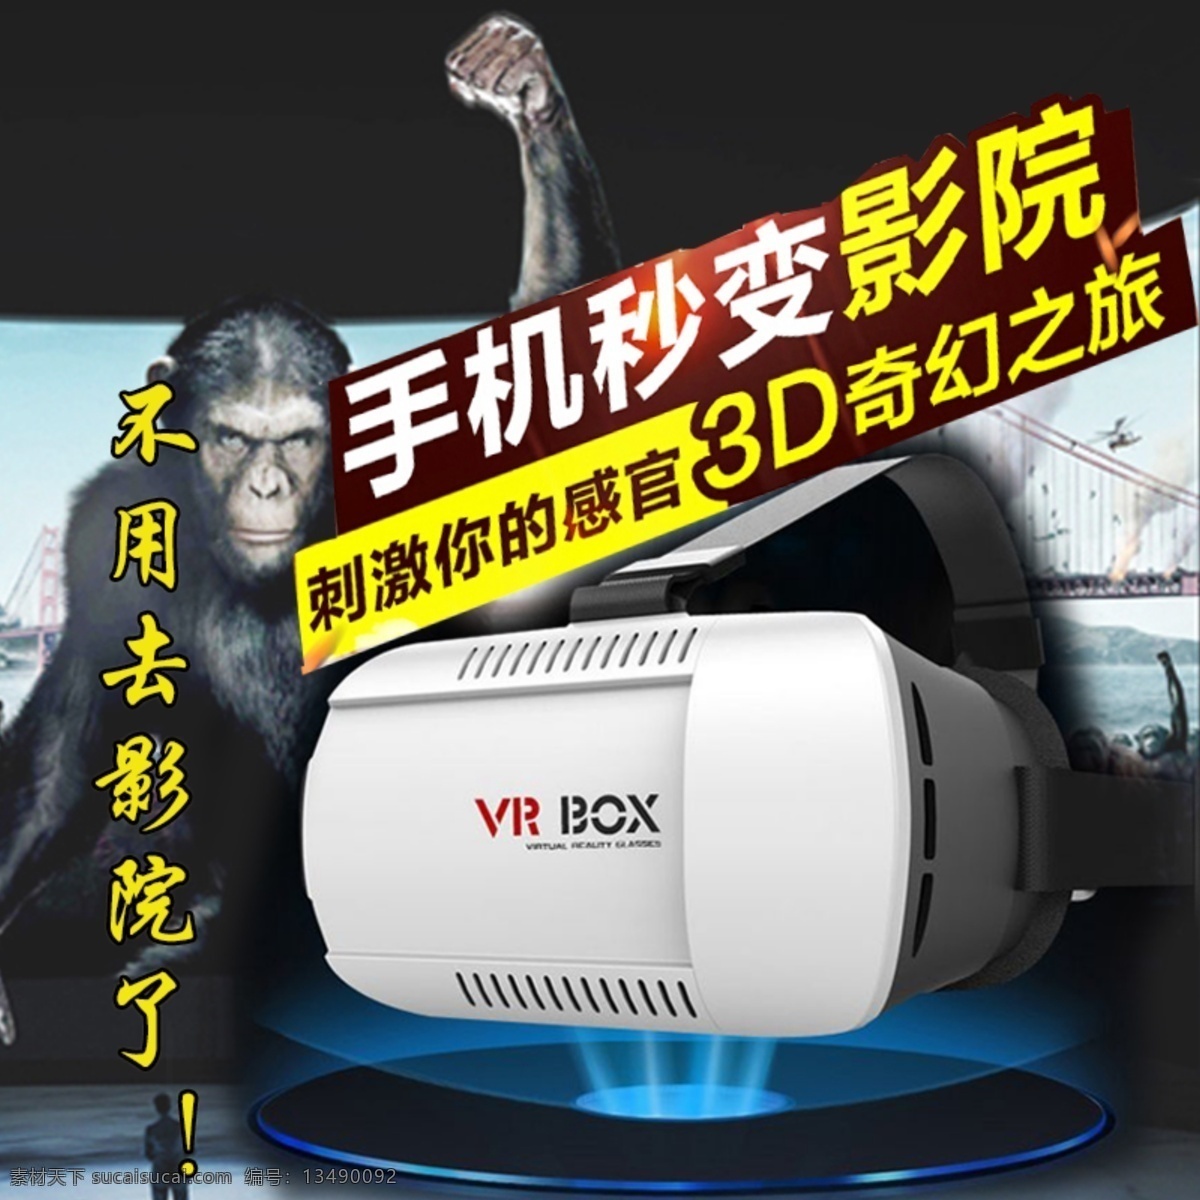 立体 影院 3d 暴风 魔镜 vr box 第二代头戴式 虚拟现实 手机 眼镜 资源立体影院 3d暴风魔镜 黑色